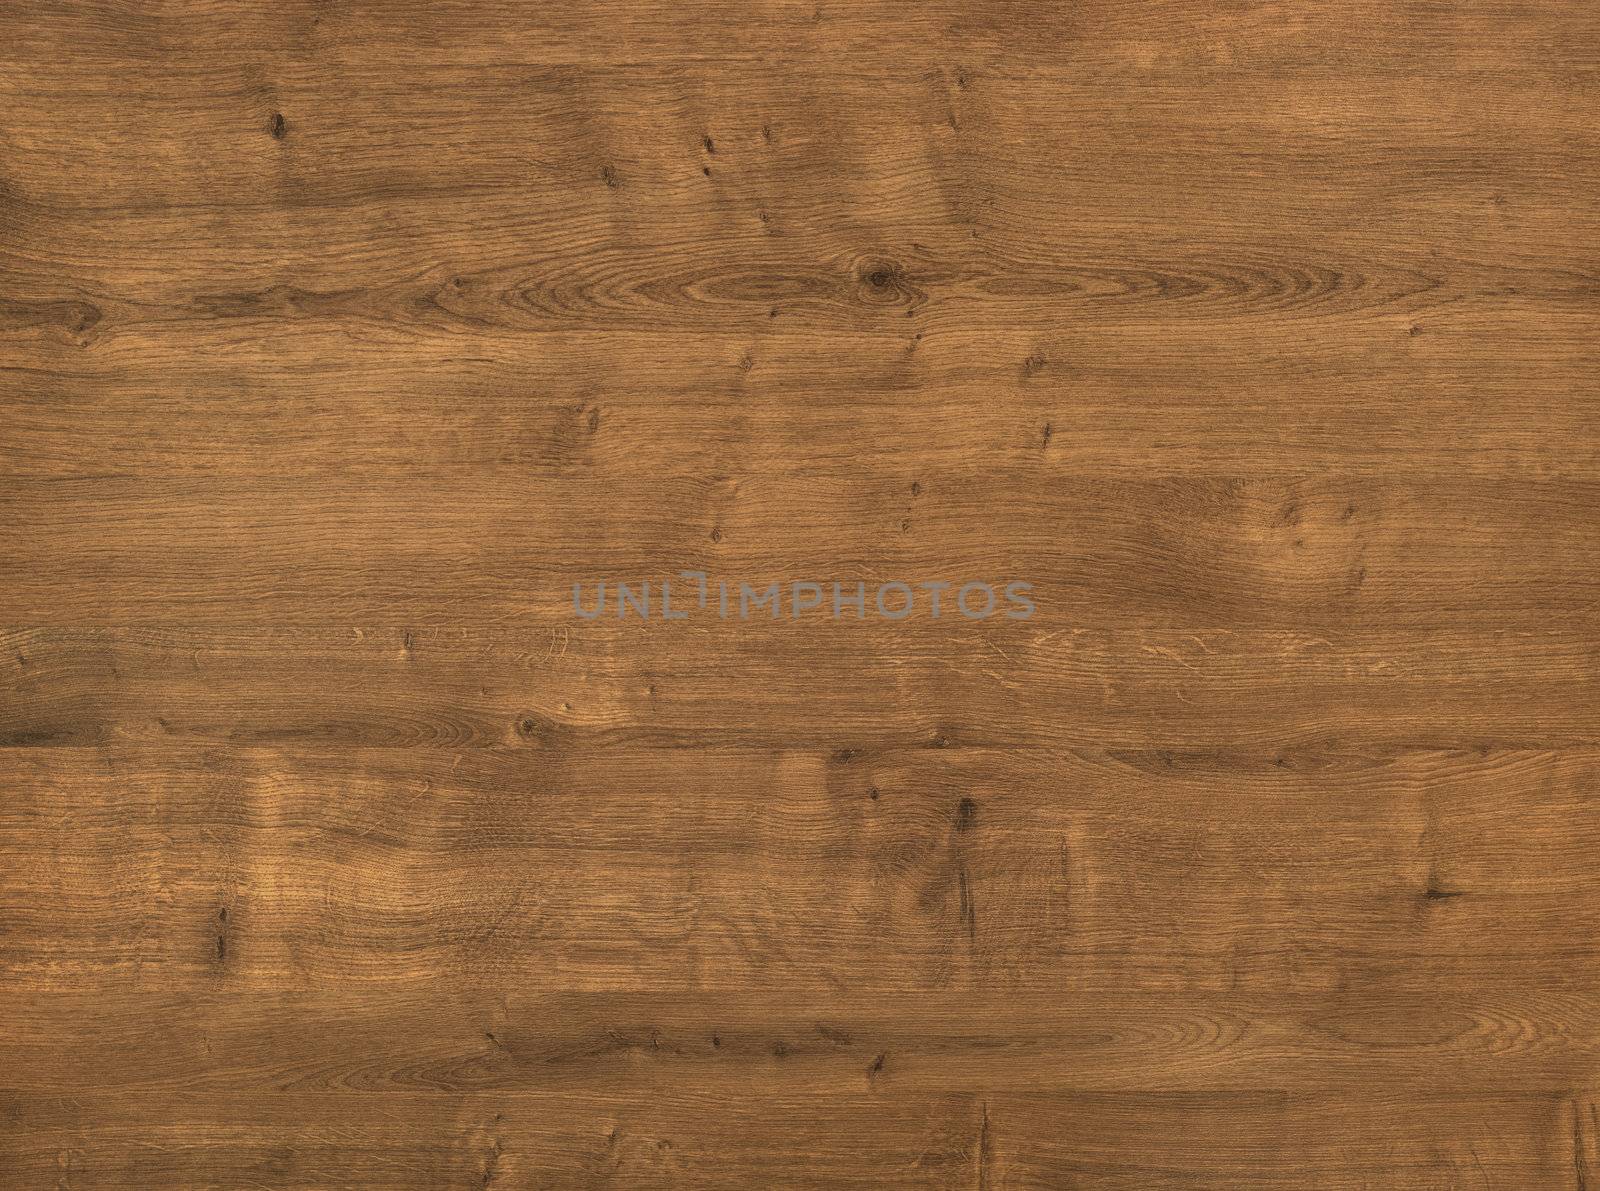 Brown wooden parquet floor planks. Wooden background.